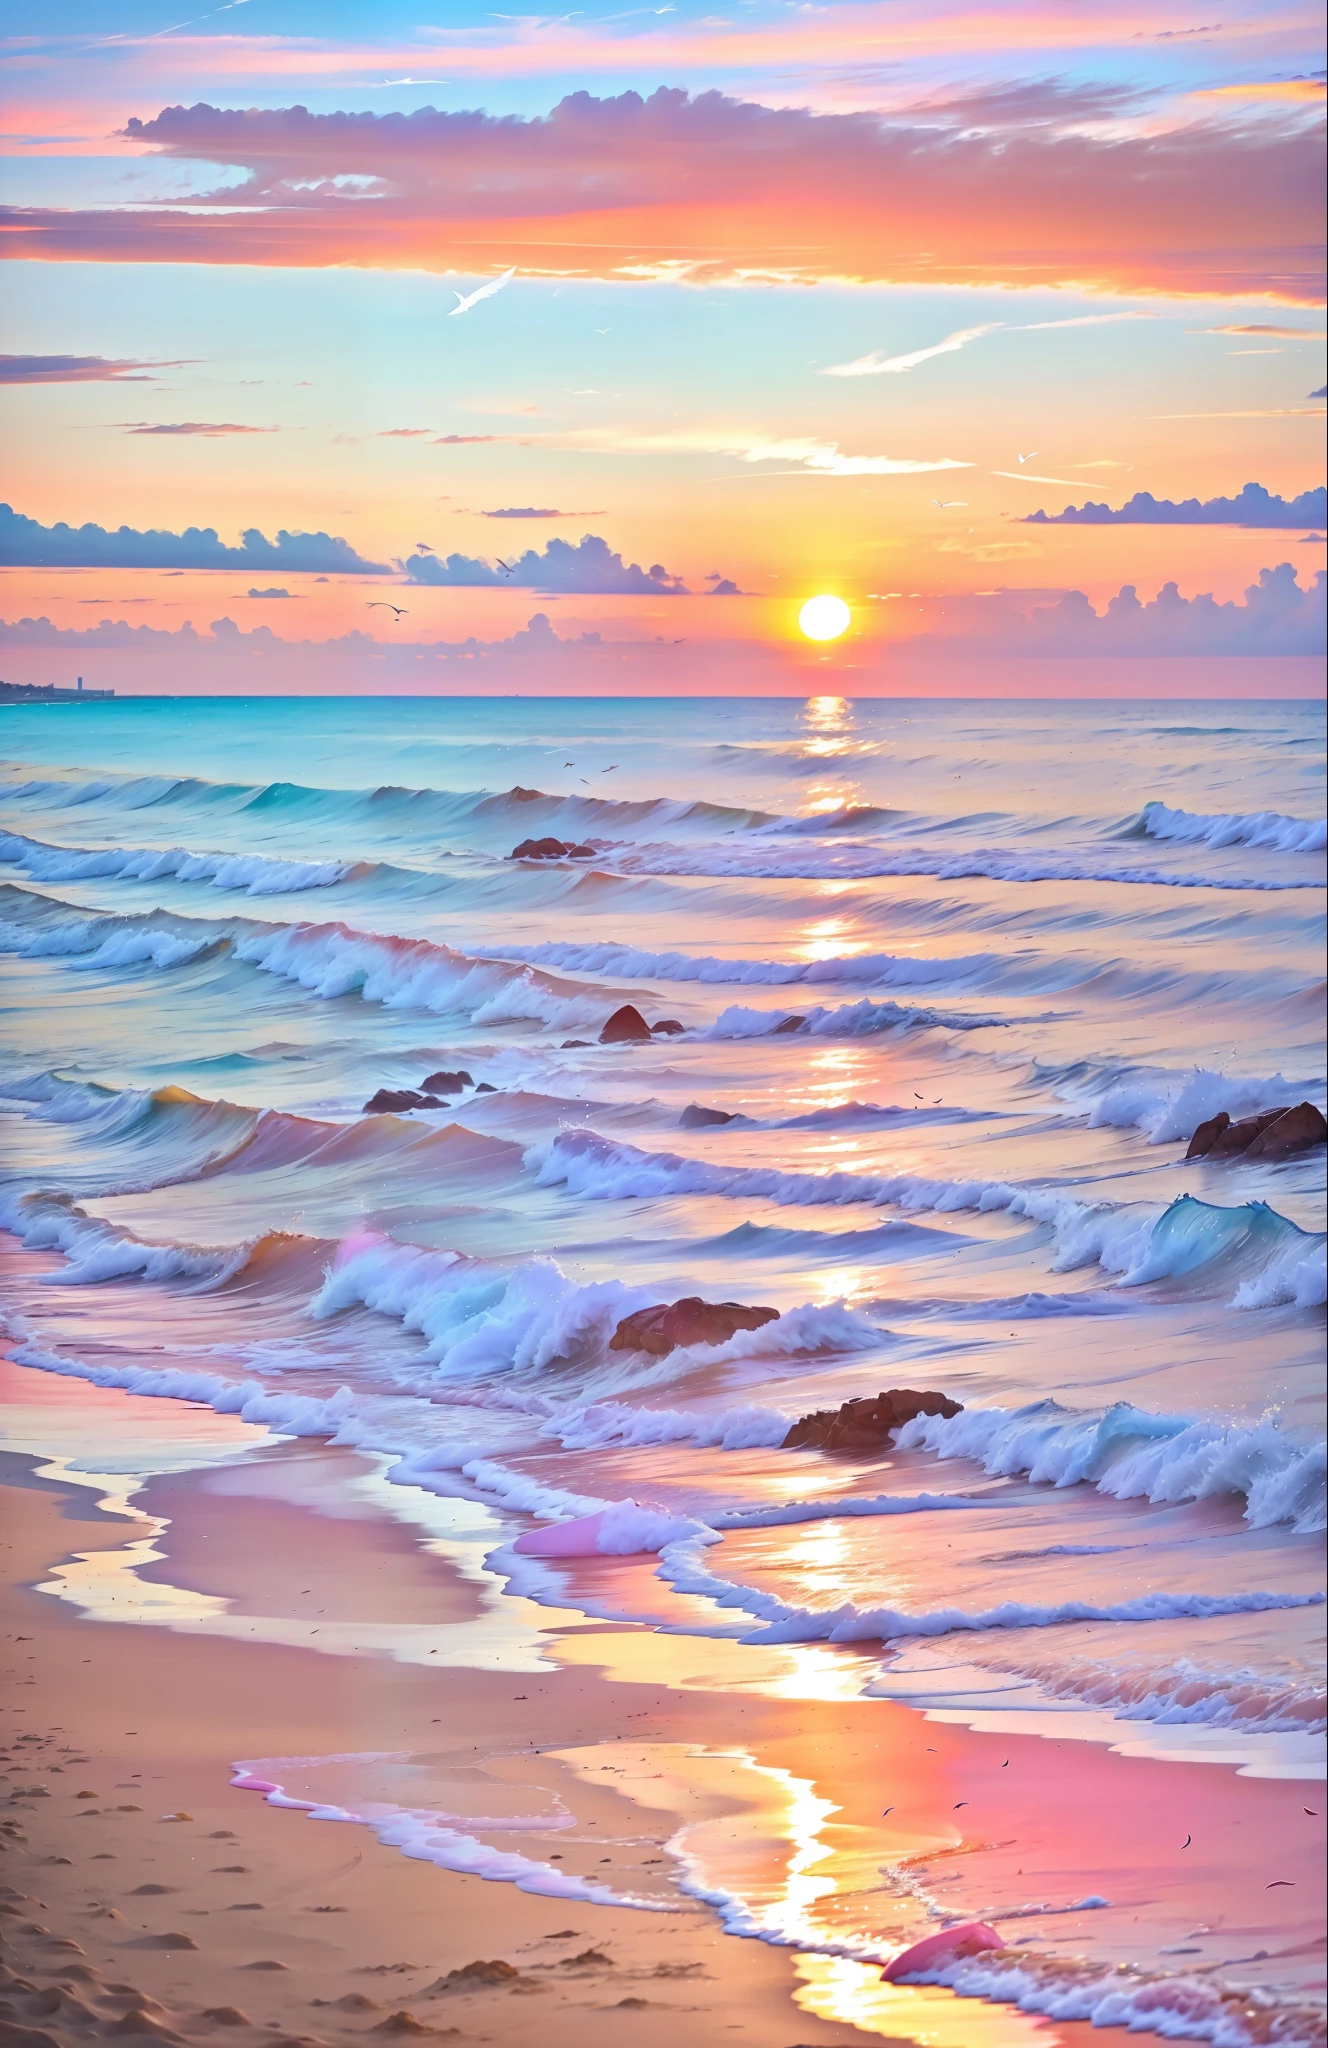 Un coucher de soleil absolument fascinant sur la plage, avec un mélange d&#39;orange, rose, et jaune dans le ciel. L&#39;eau est limpide, embrasse doucement la côte, et le sable blanc est sans fin. La scène est dynamique et époustouflante, avec des mouettes planant haut dans le ciel et des palmiers se balançant doucement. Plongez dans l&#39;atmosphère calme et laissez la sérénité vous envelopper.